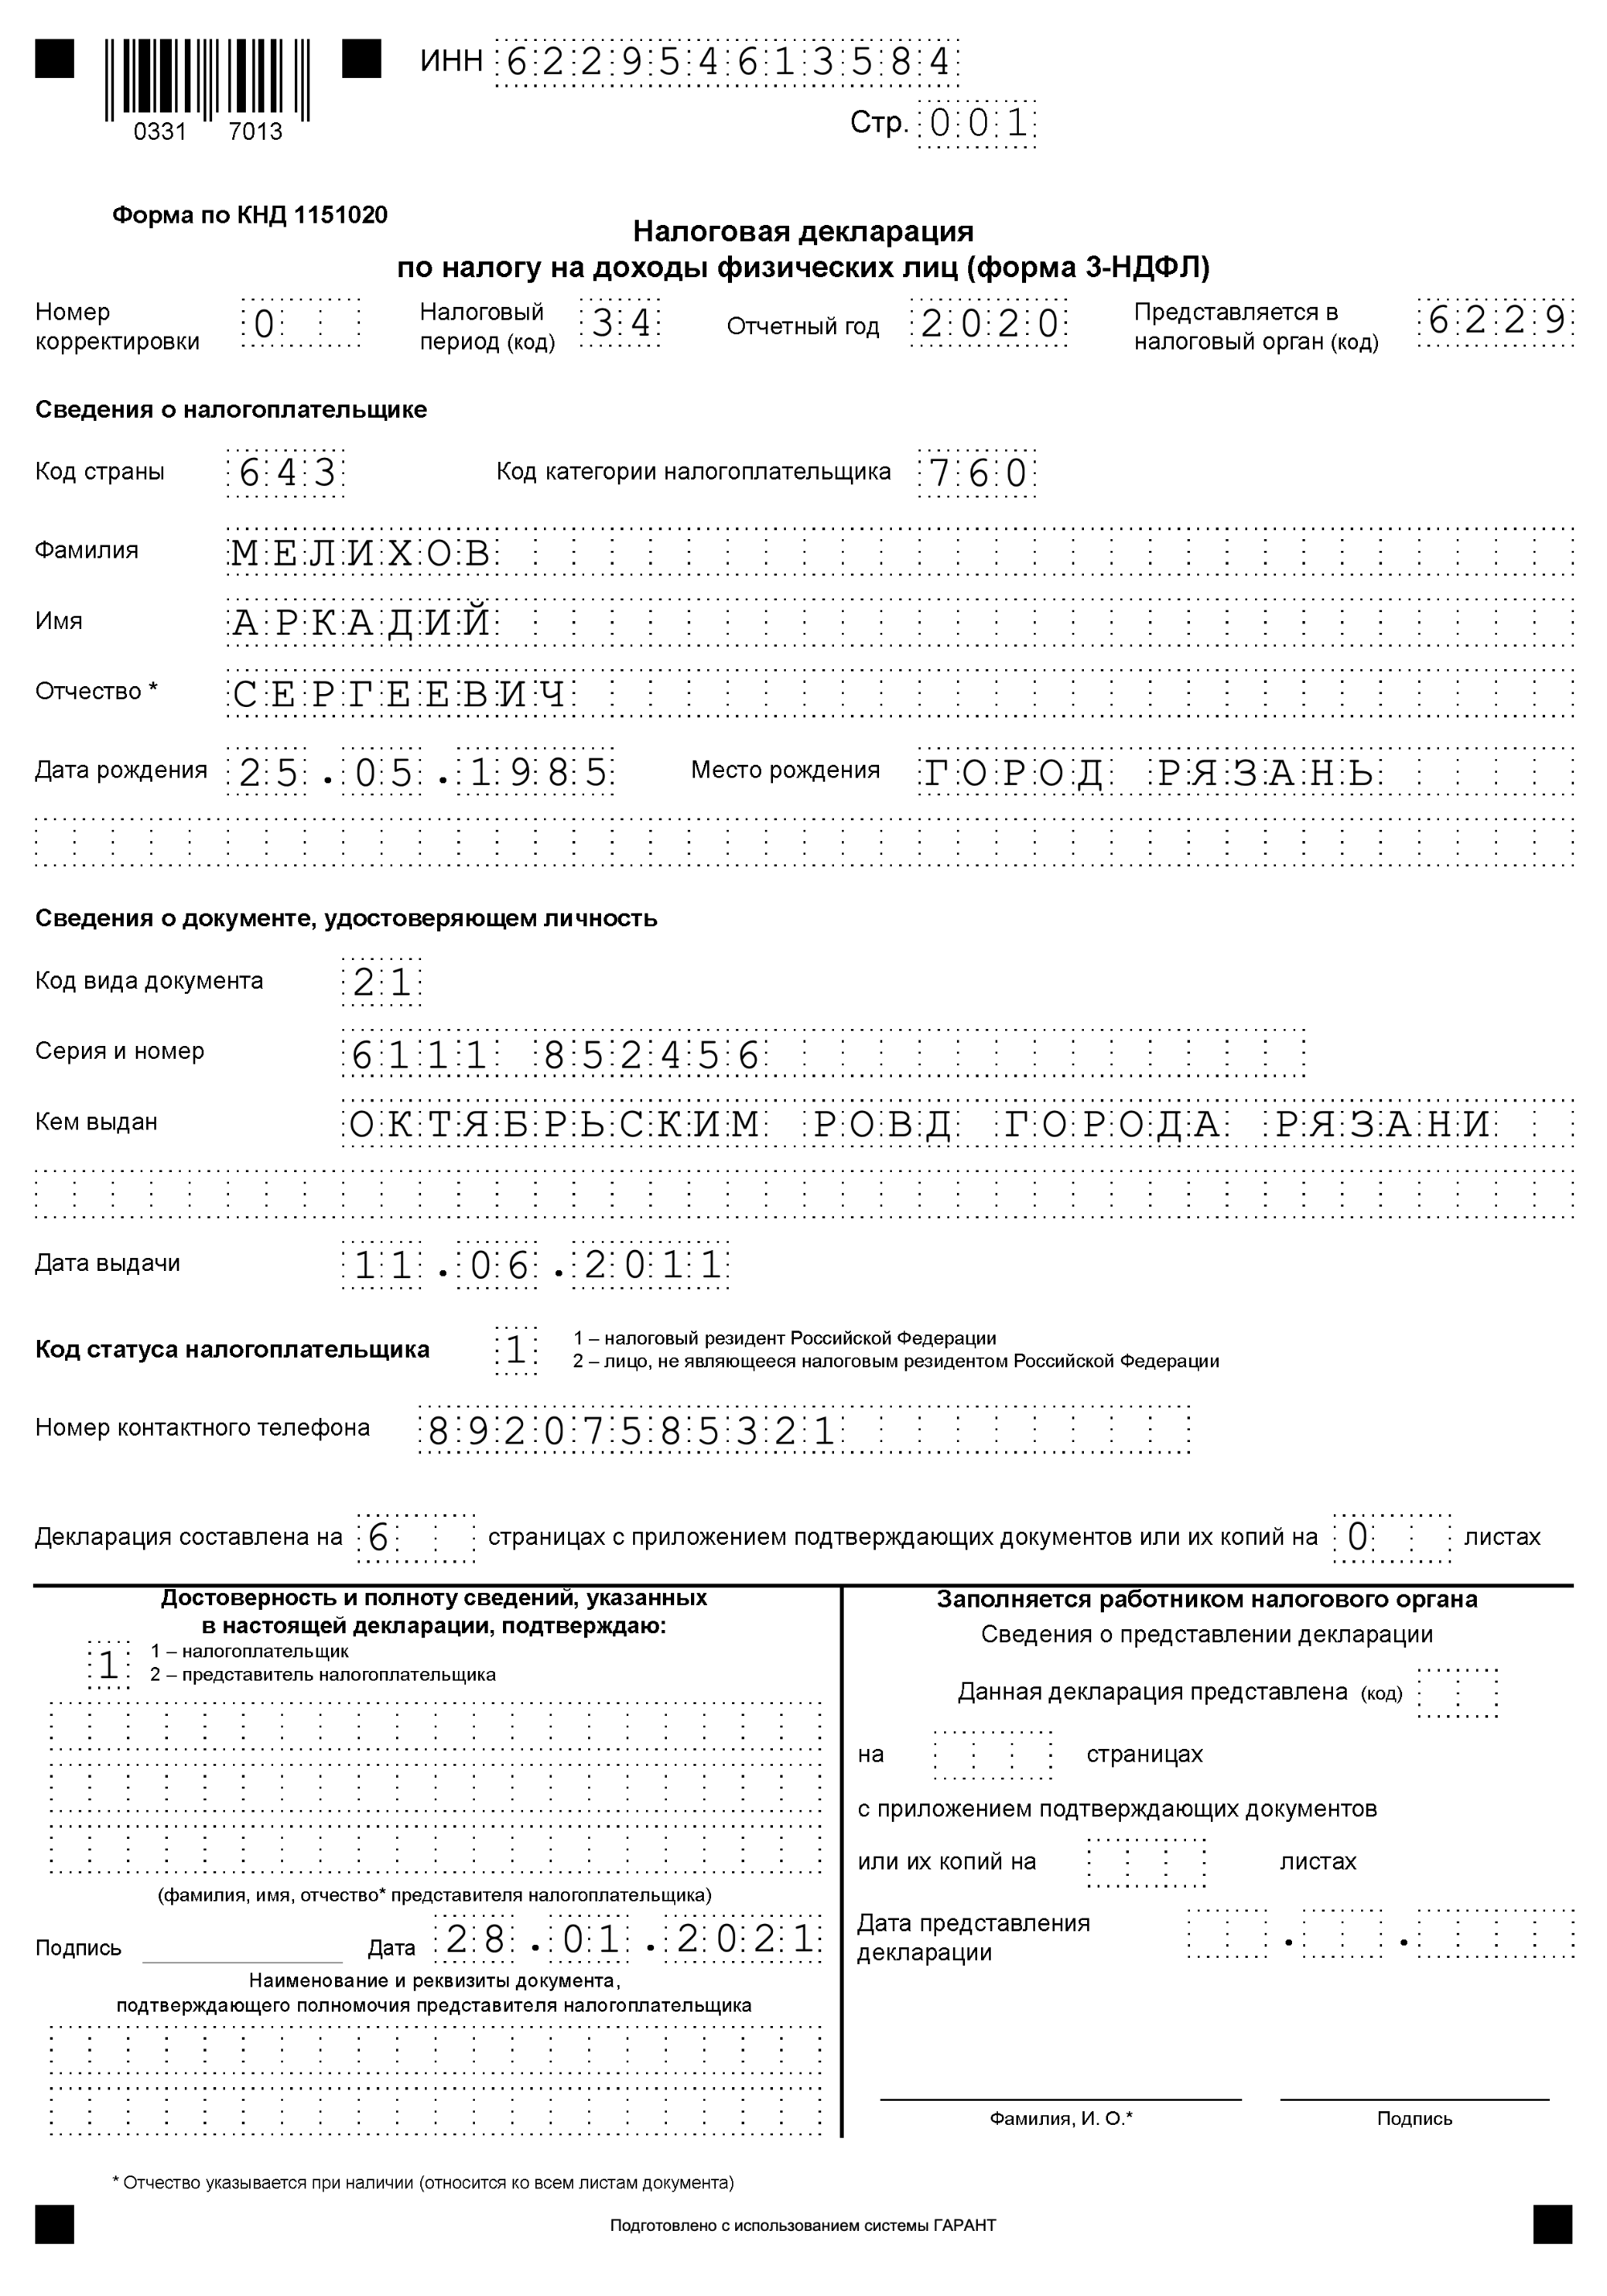 А вот как выглядит заполненная декларация — эта форма называется 3⁠-⁠НДФЛ. Источник: garant.ru